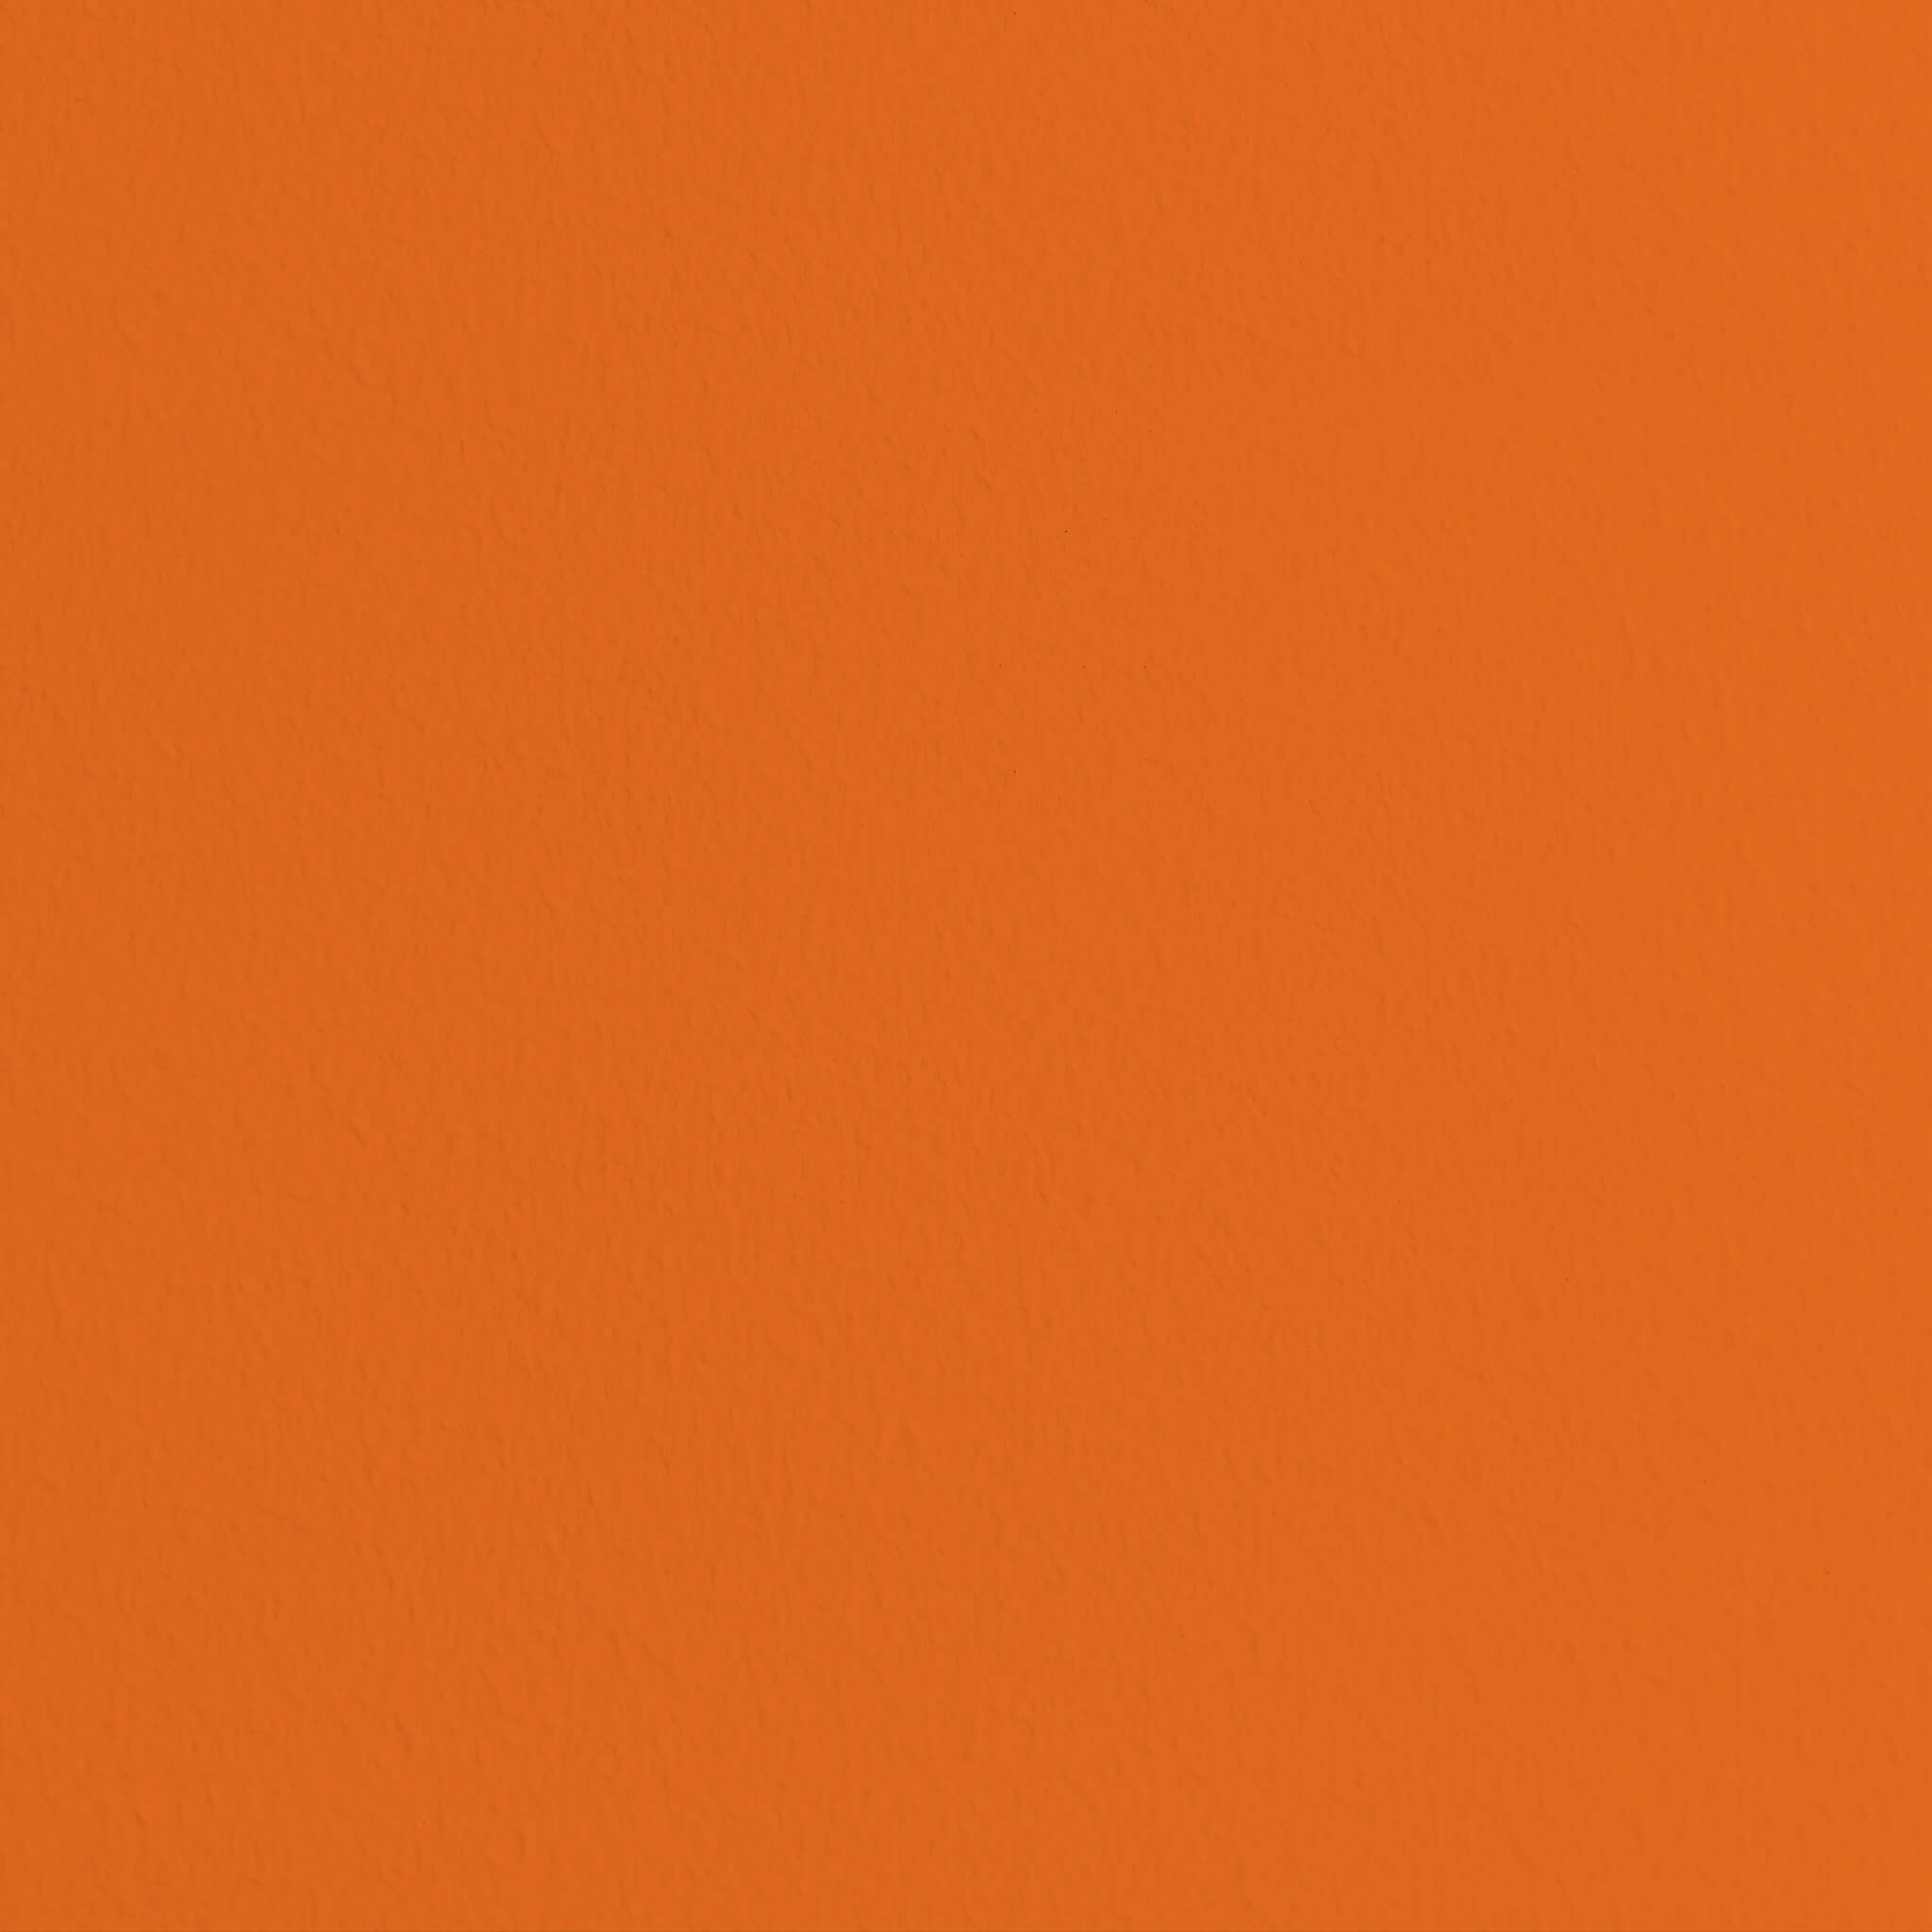 MissPompadour Orange mit Mandarine - Die Nützliche 2.5L